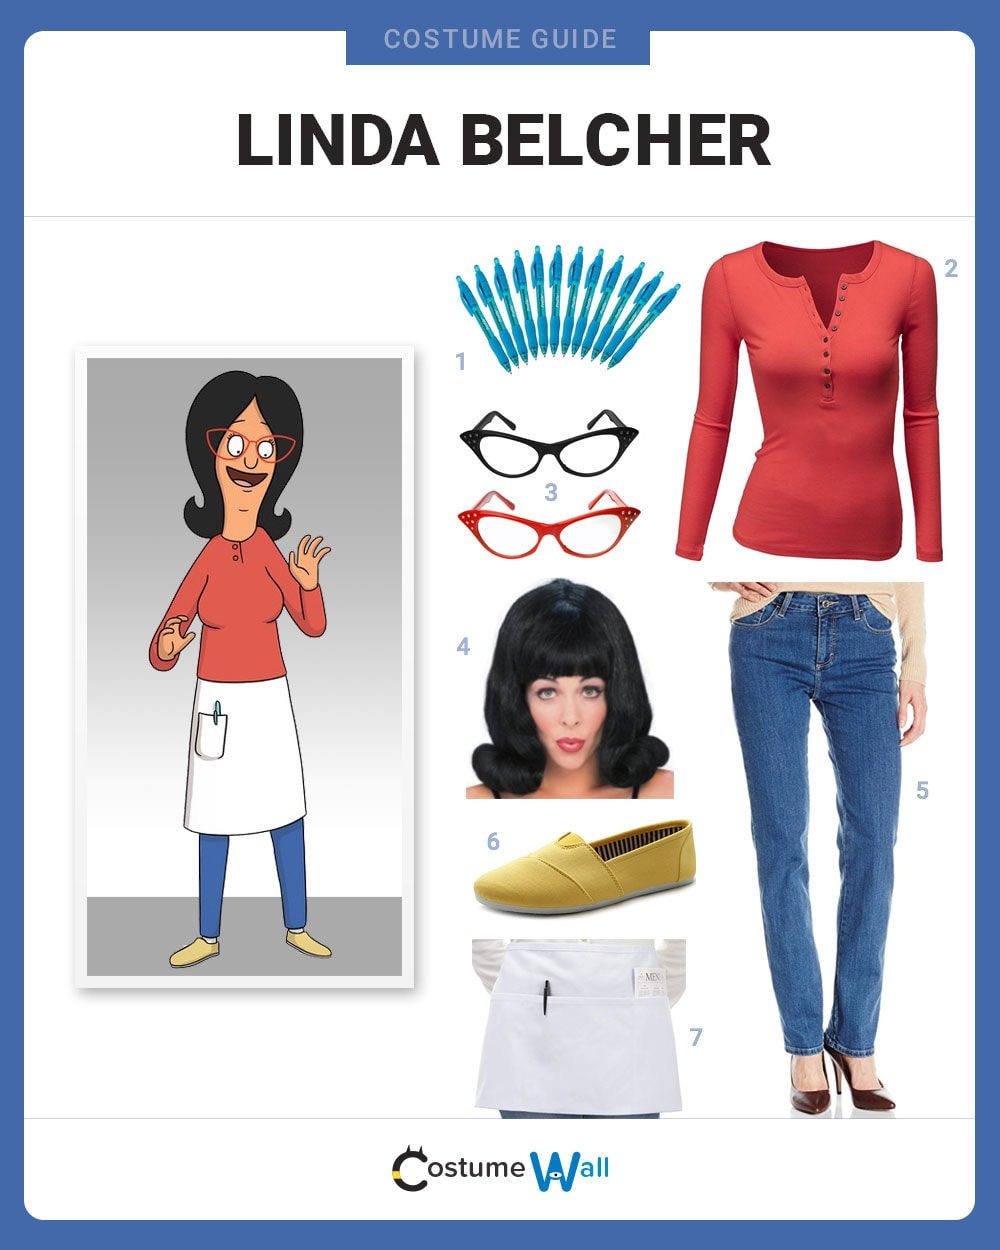 Linda belcher costume